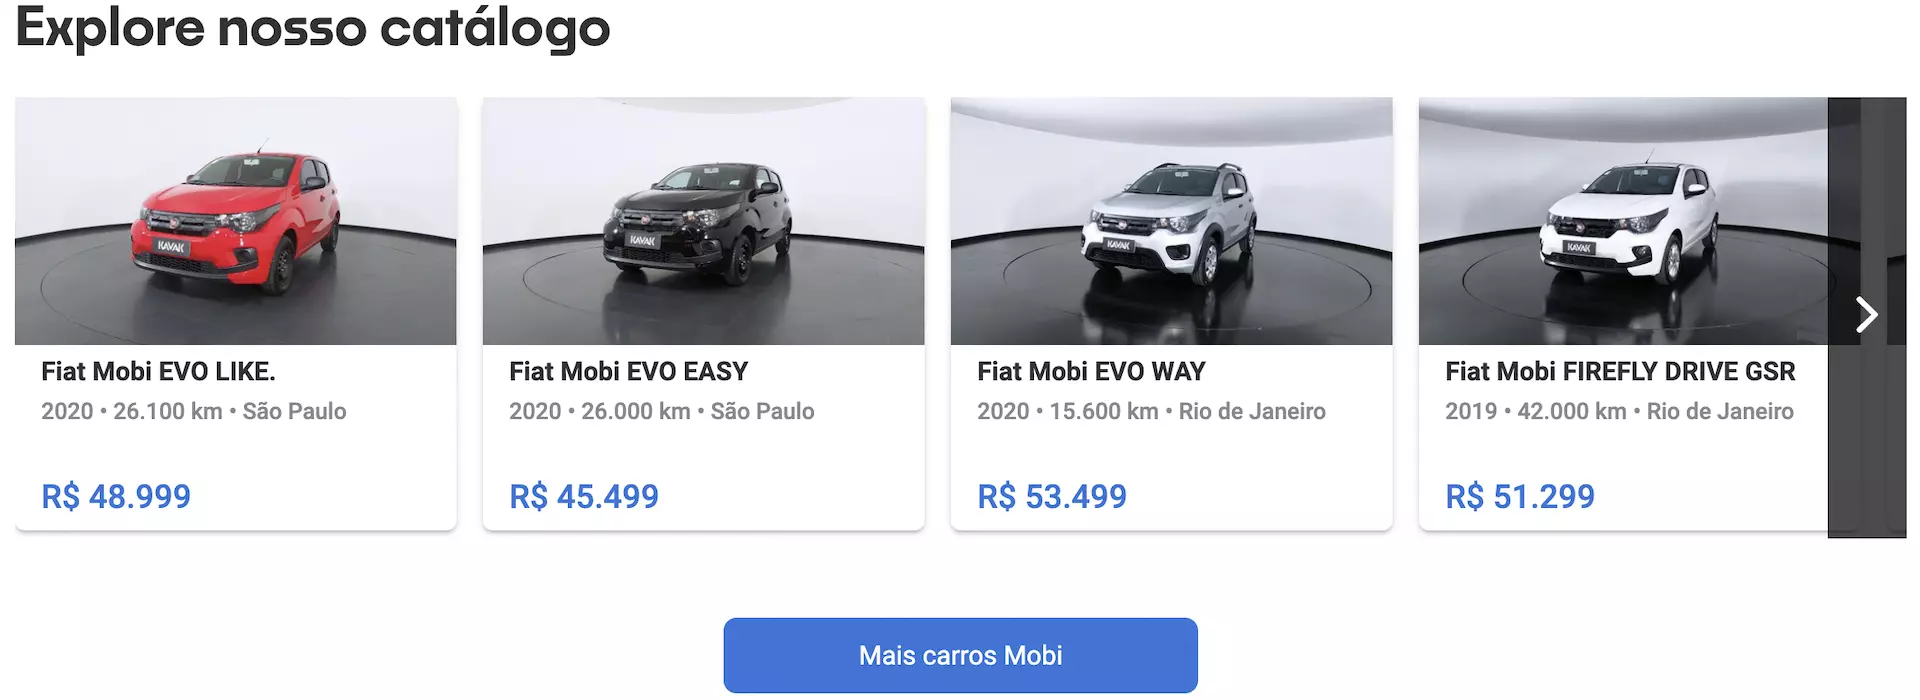 Fiat Mobi preço